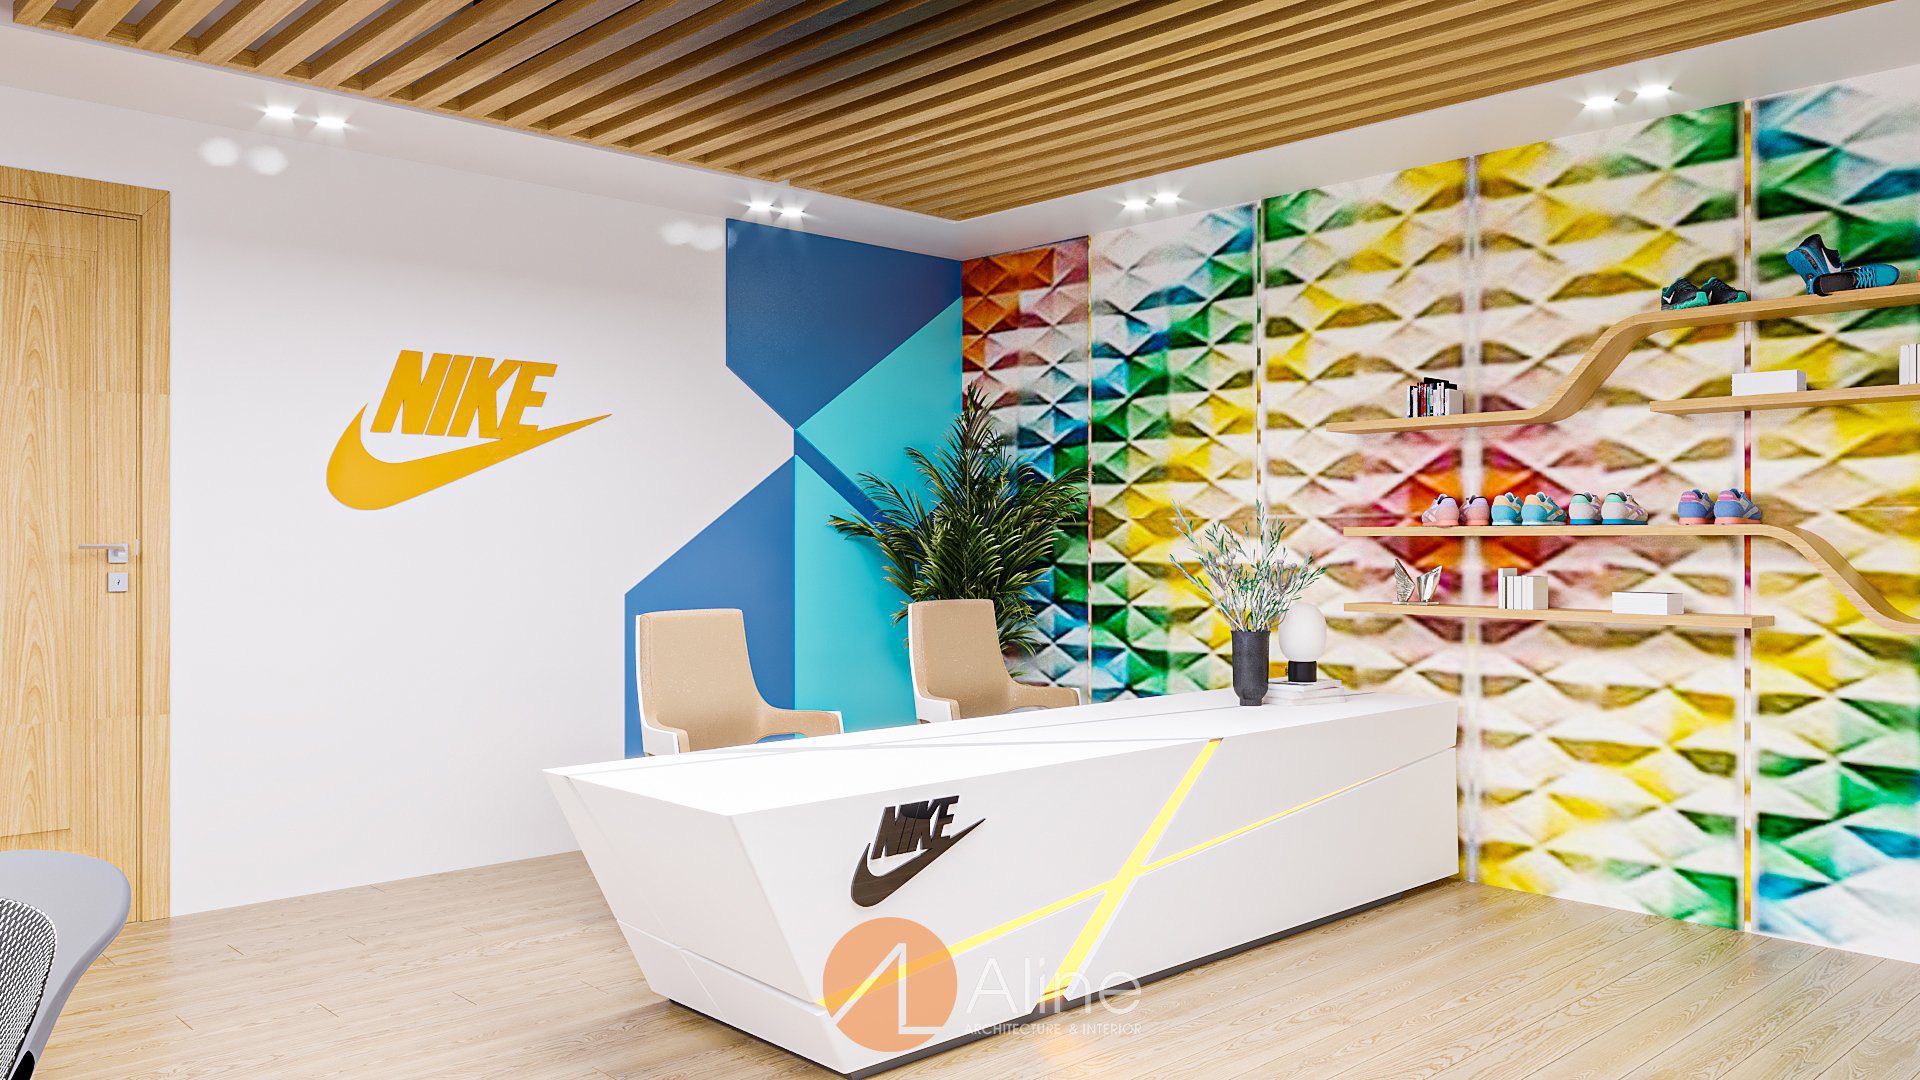 Thiết kế văn phòng Nike